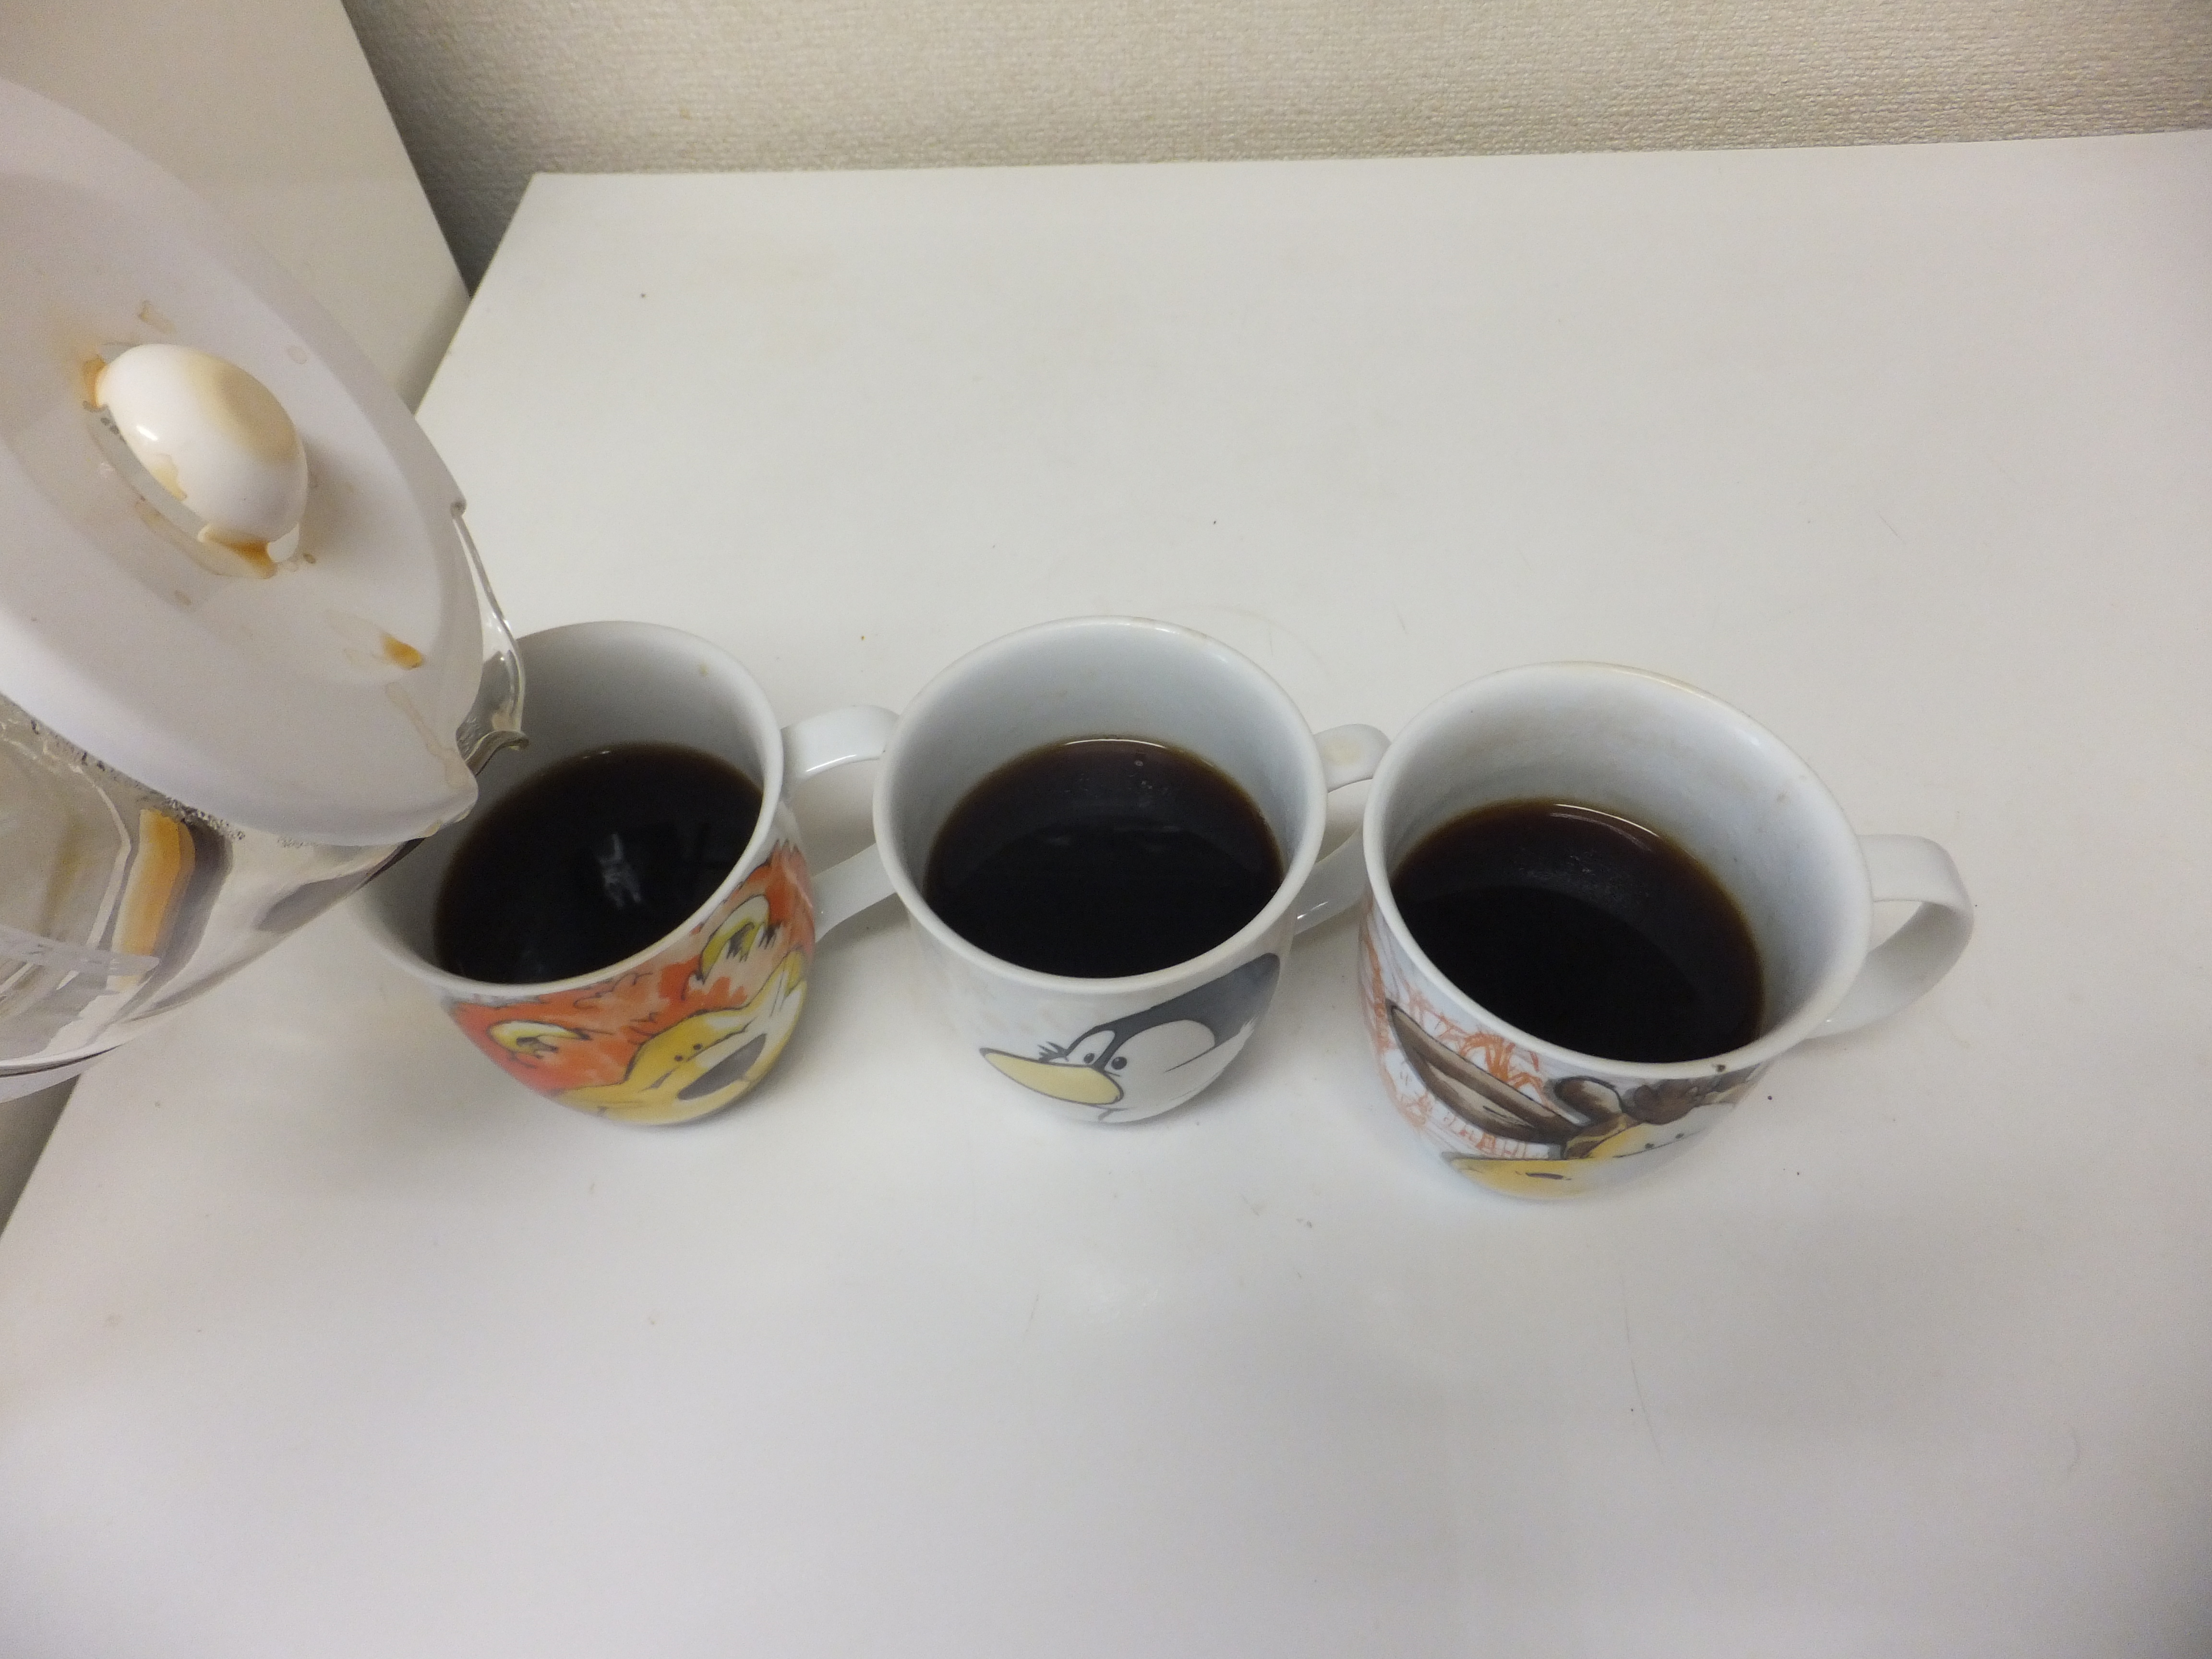 マグカップ3杯分のコーヒーです